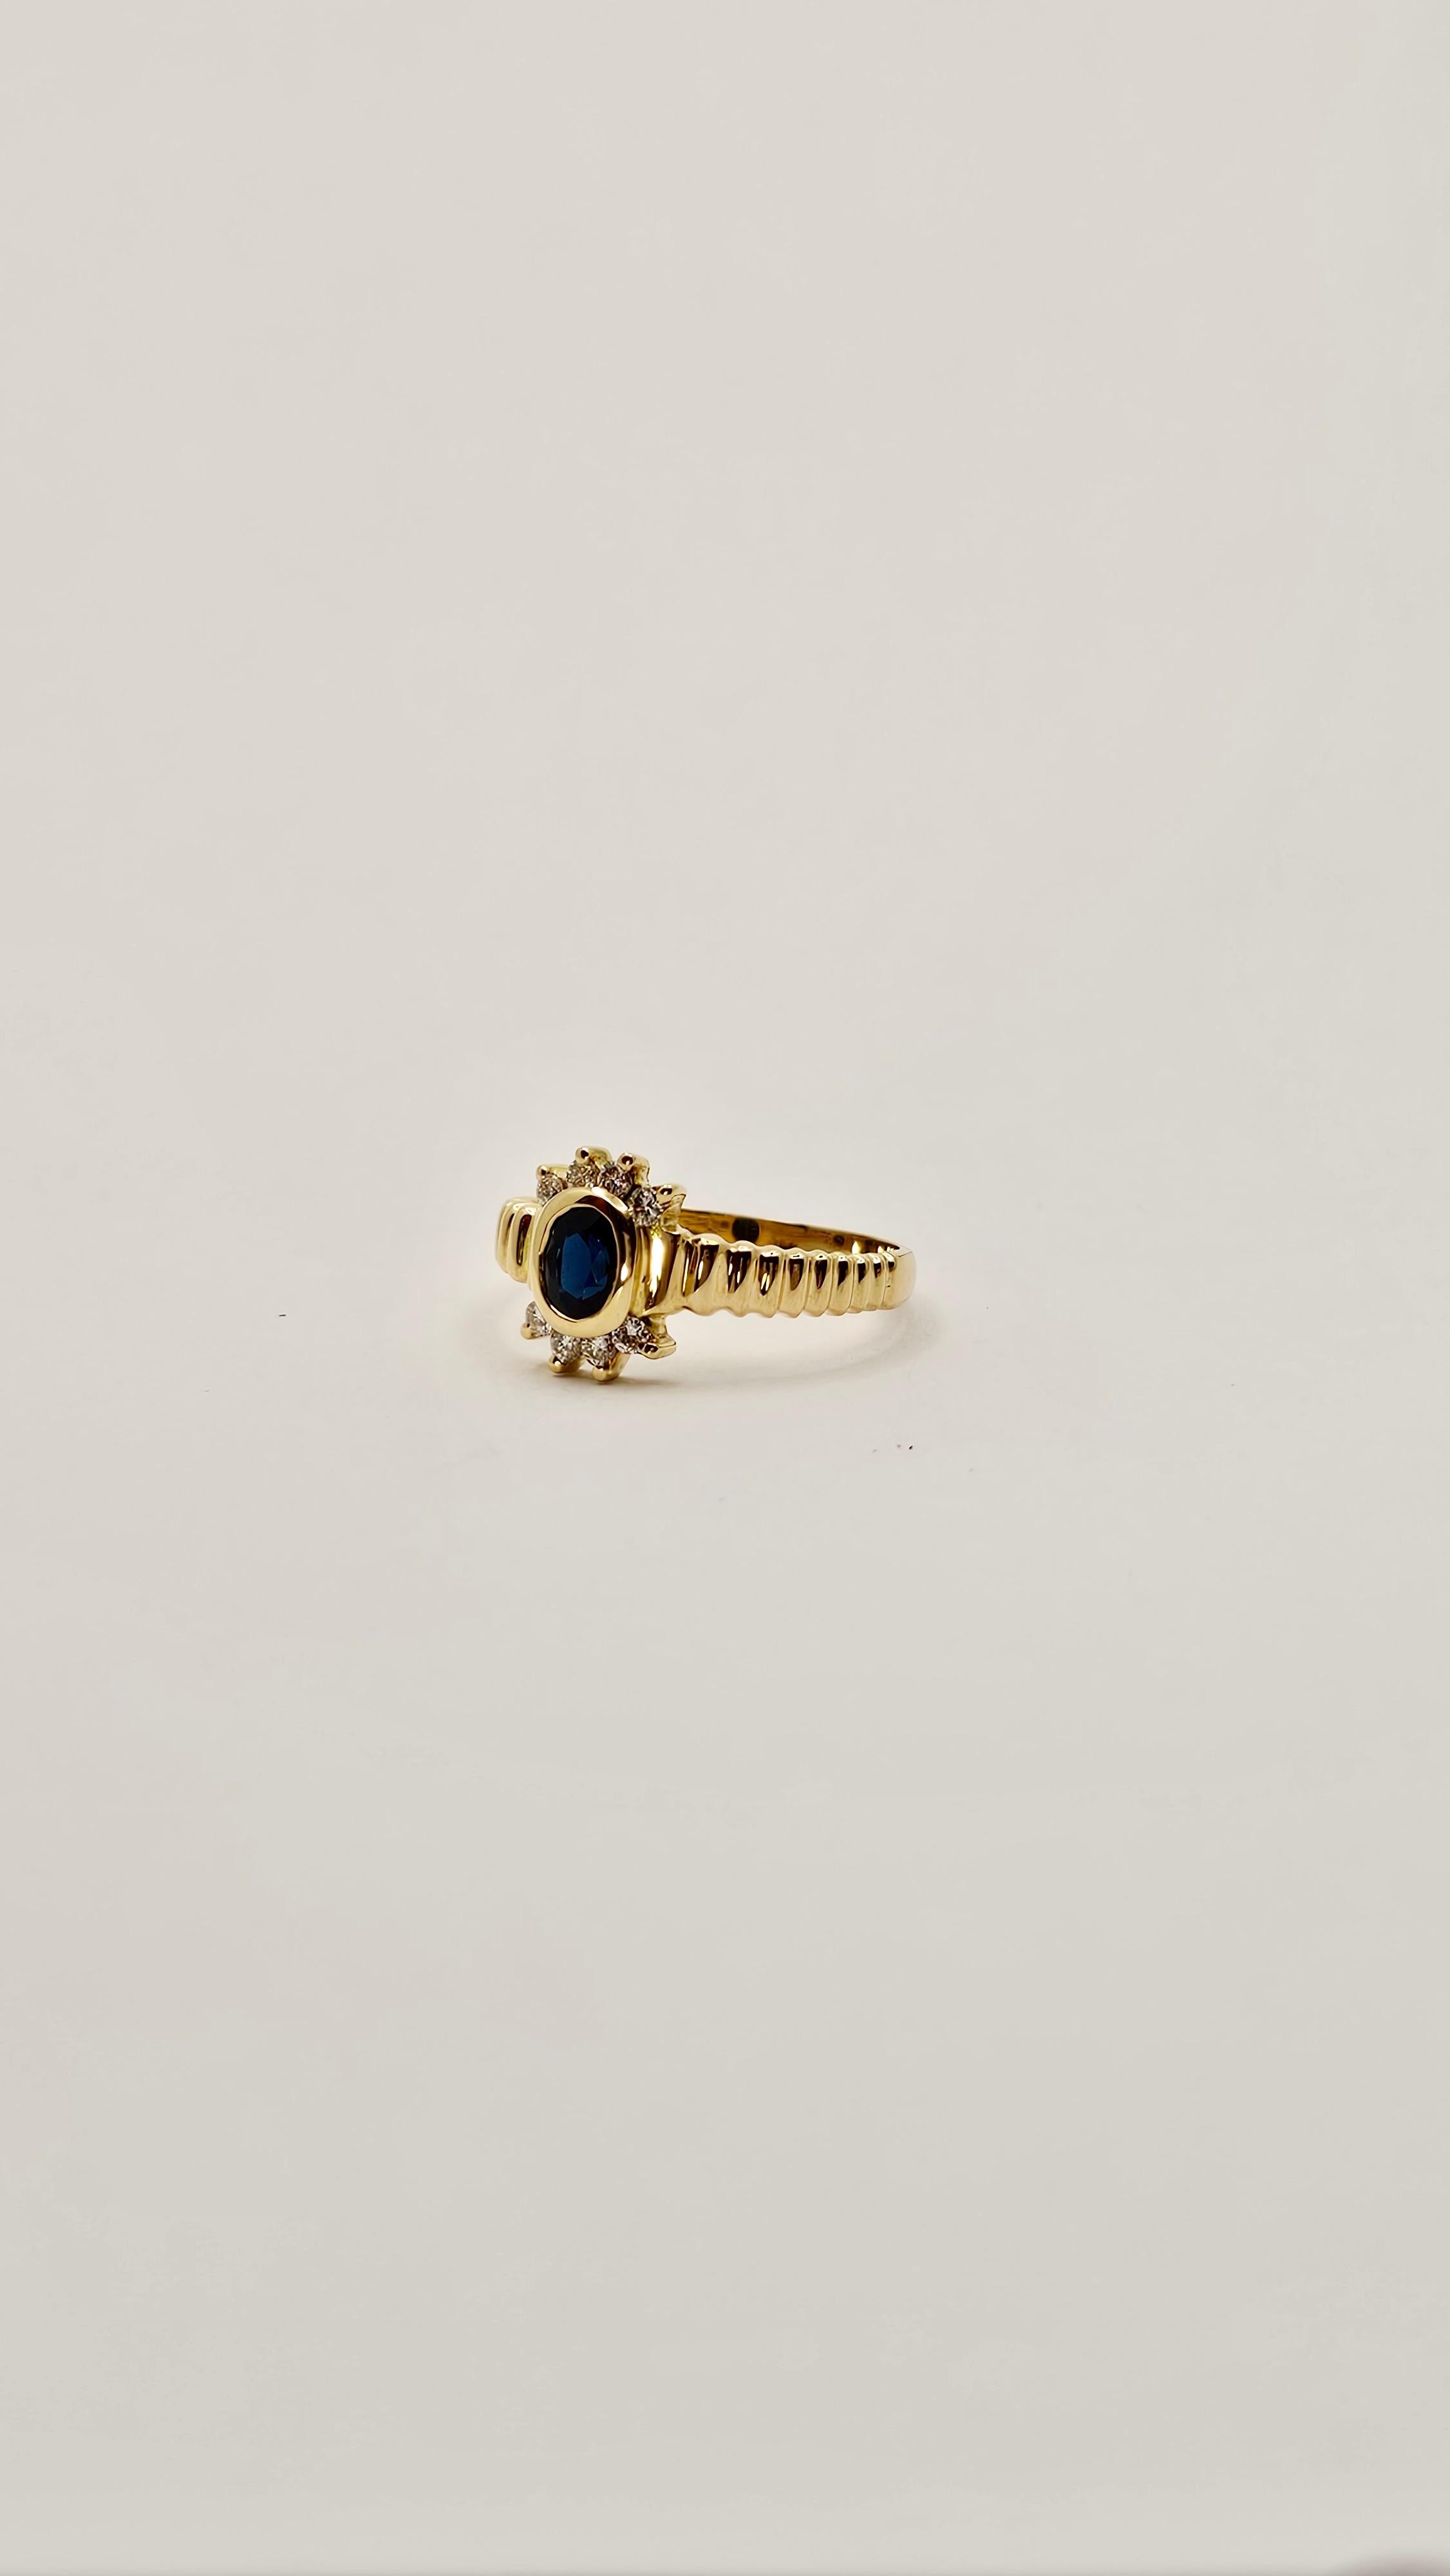 Un anello vintage di epoca 1980 circa, realizzato in oro giallo 18 Kt dal peso di 3.40 grammi.
Il castone centrale ha uno Zaffiro blu scuro intenso, di taglio ovale, la cui misura è di mm 6 x 4 circa.
Ai lati della pietra centrale vi sono